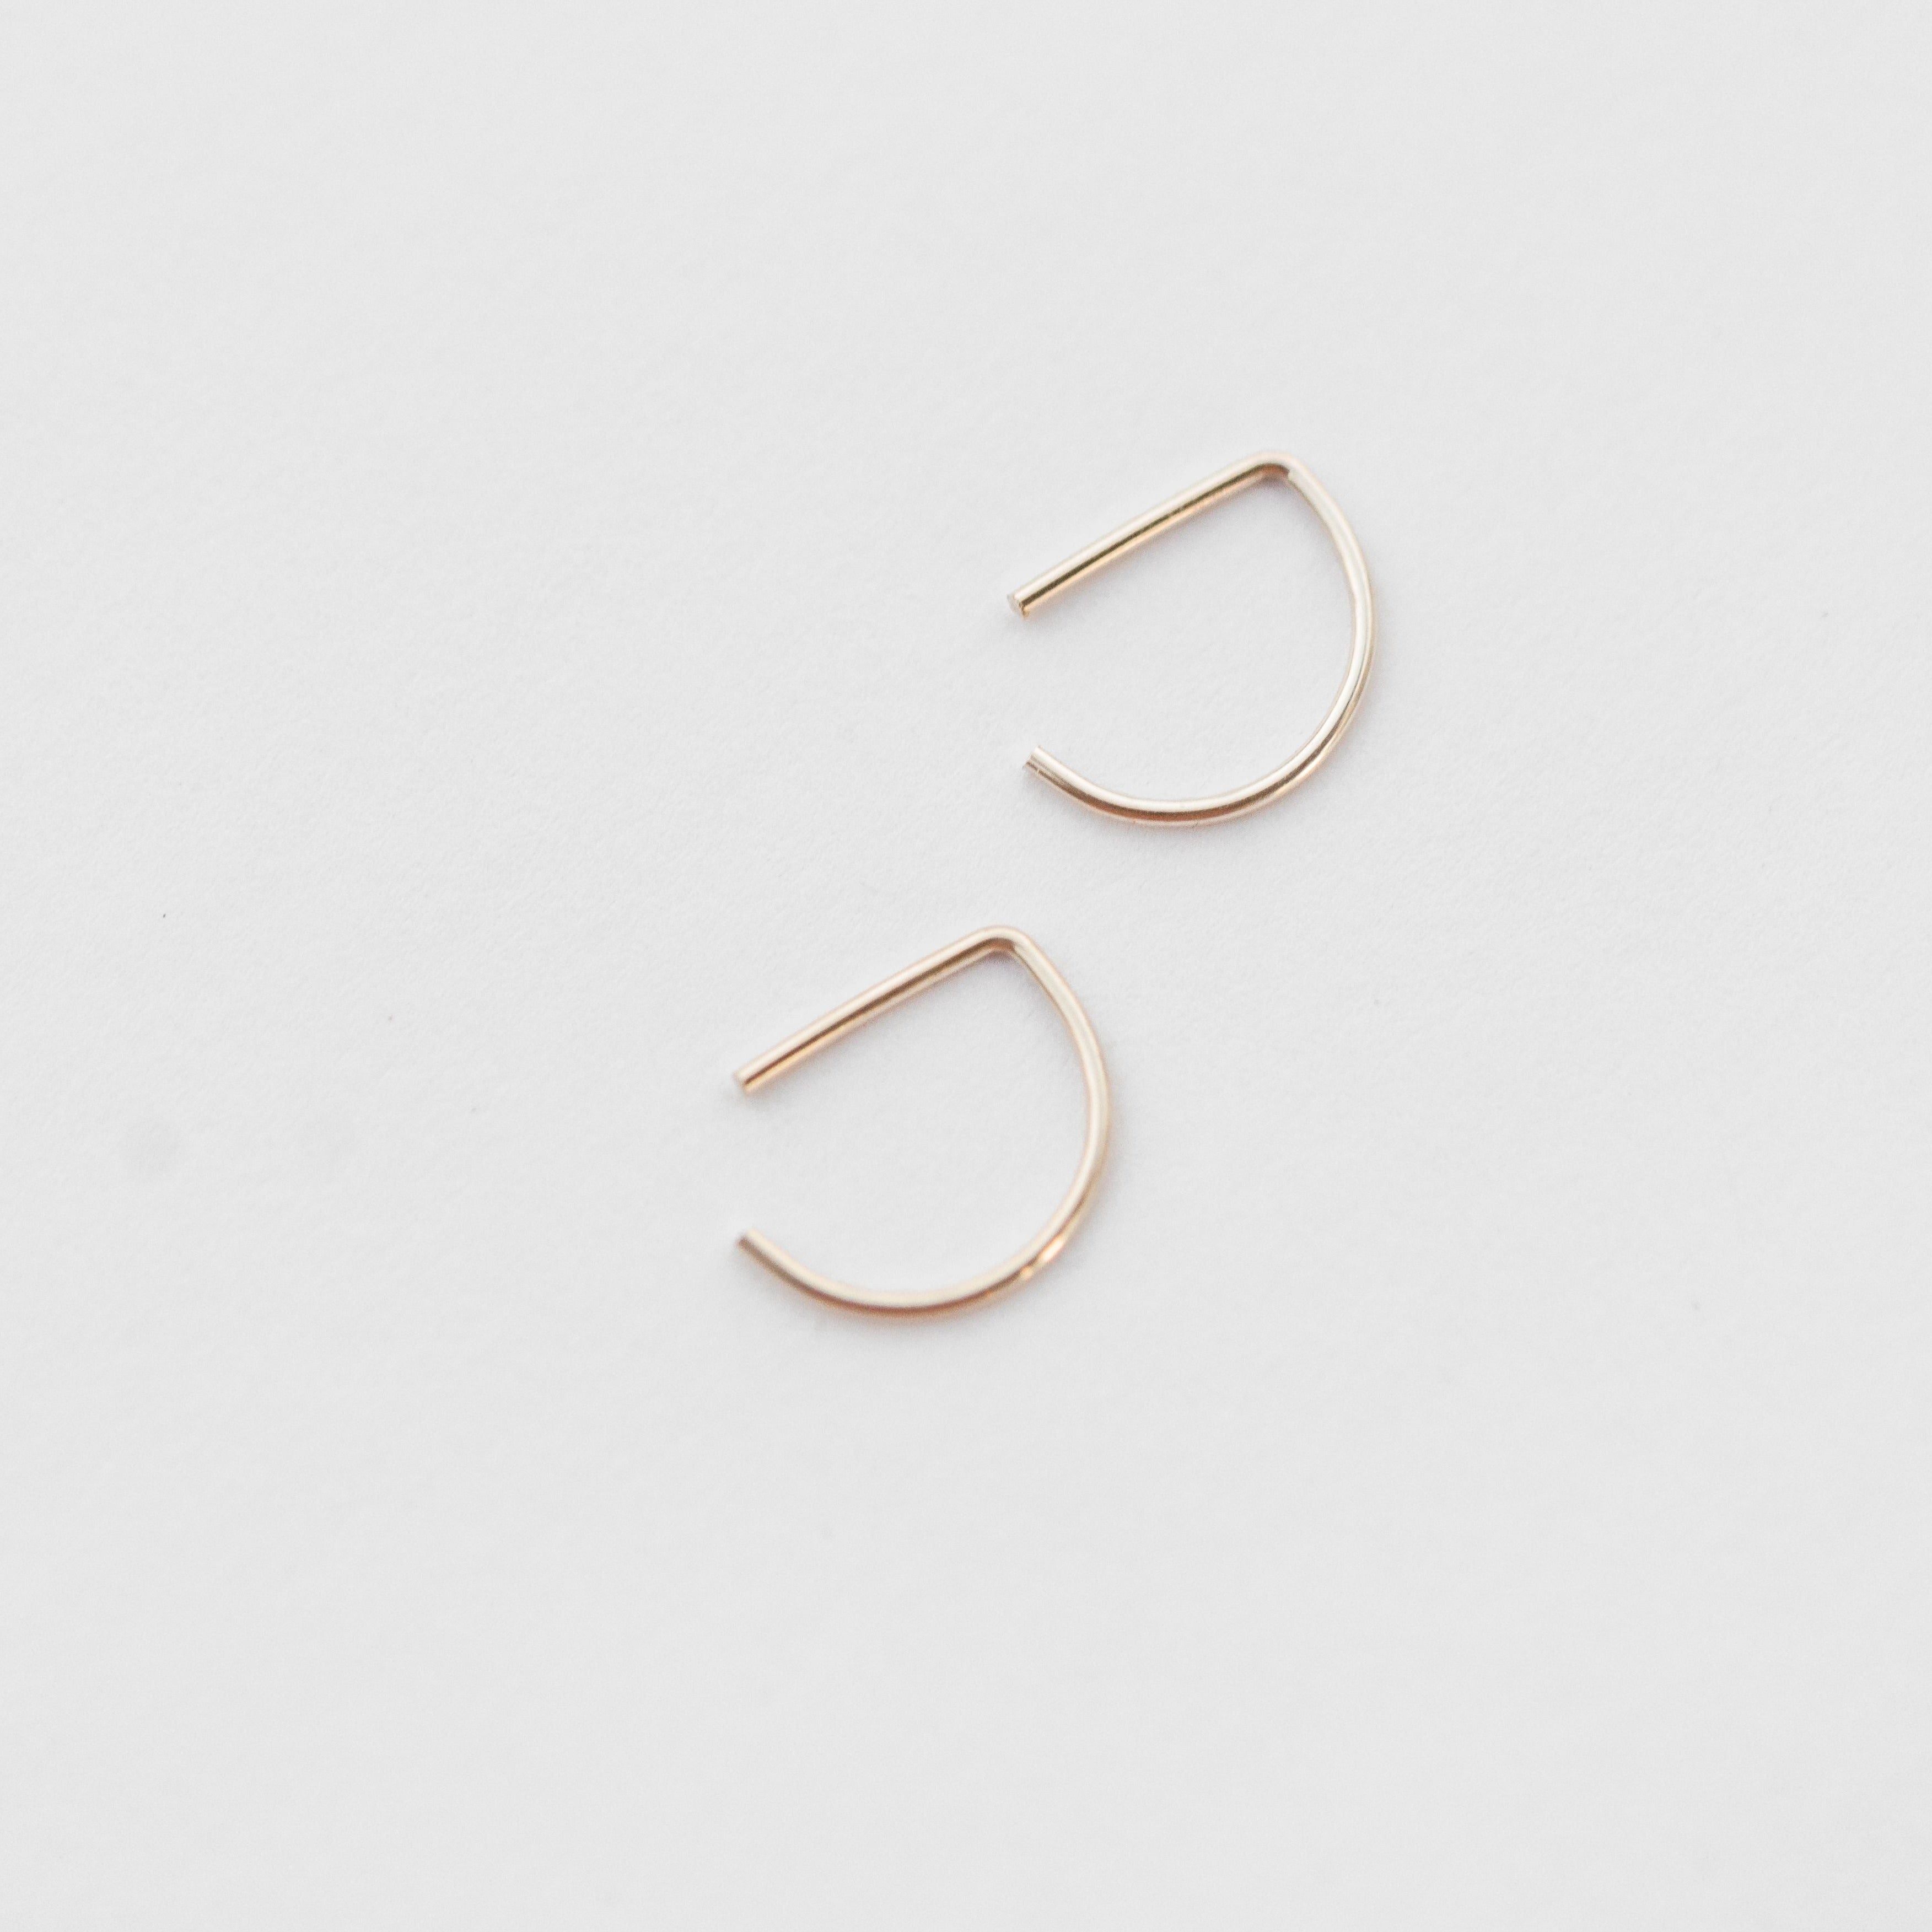 G Small Pearl Beads Metallic Hoop Stud Earrings